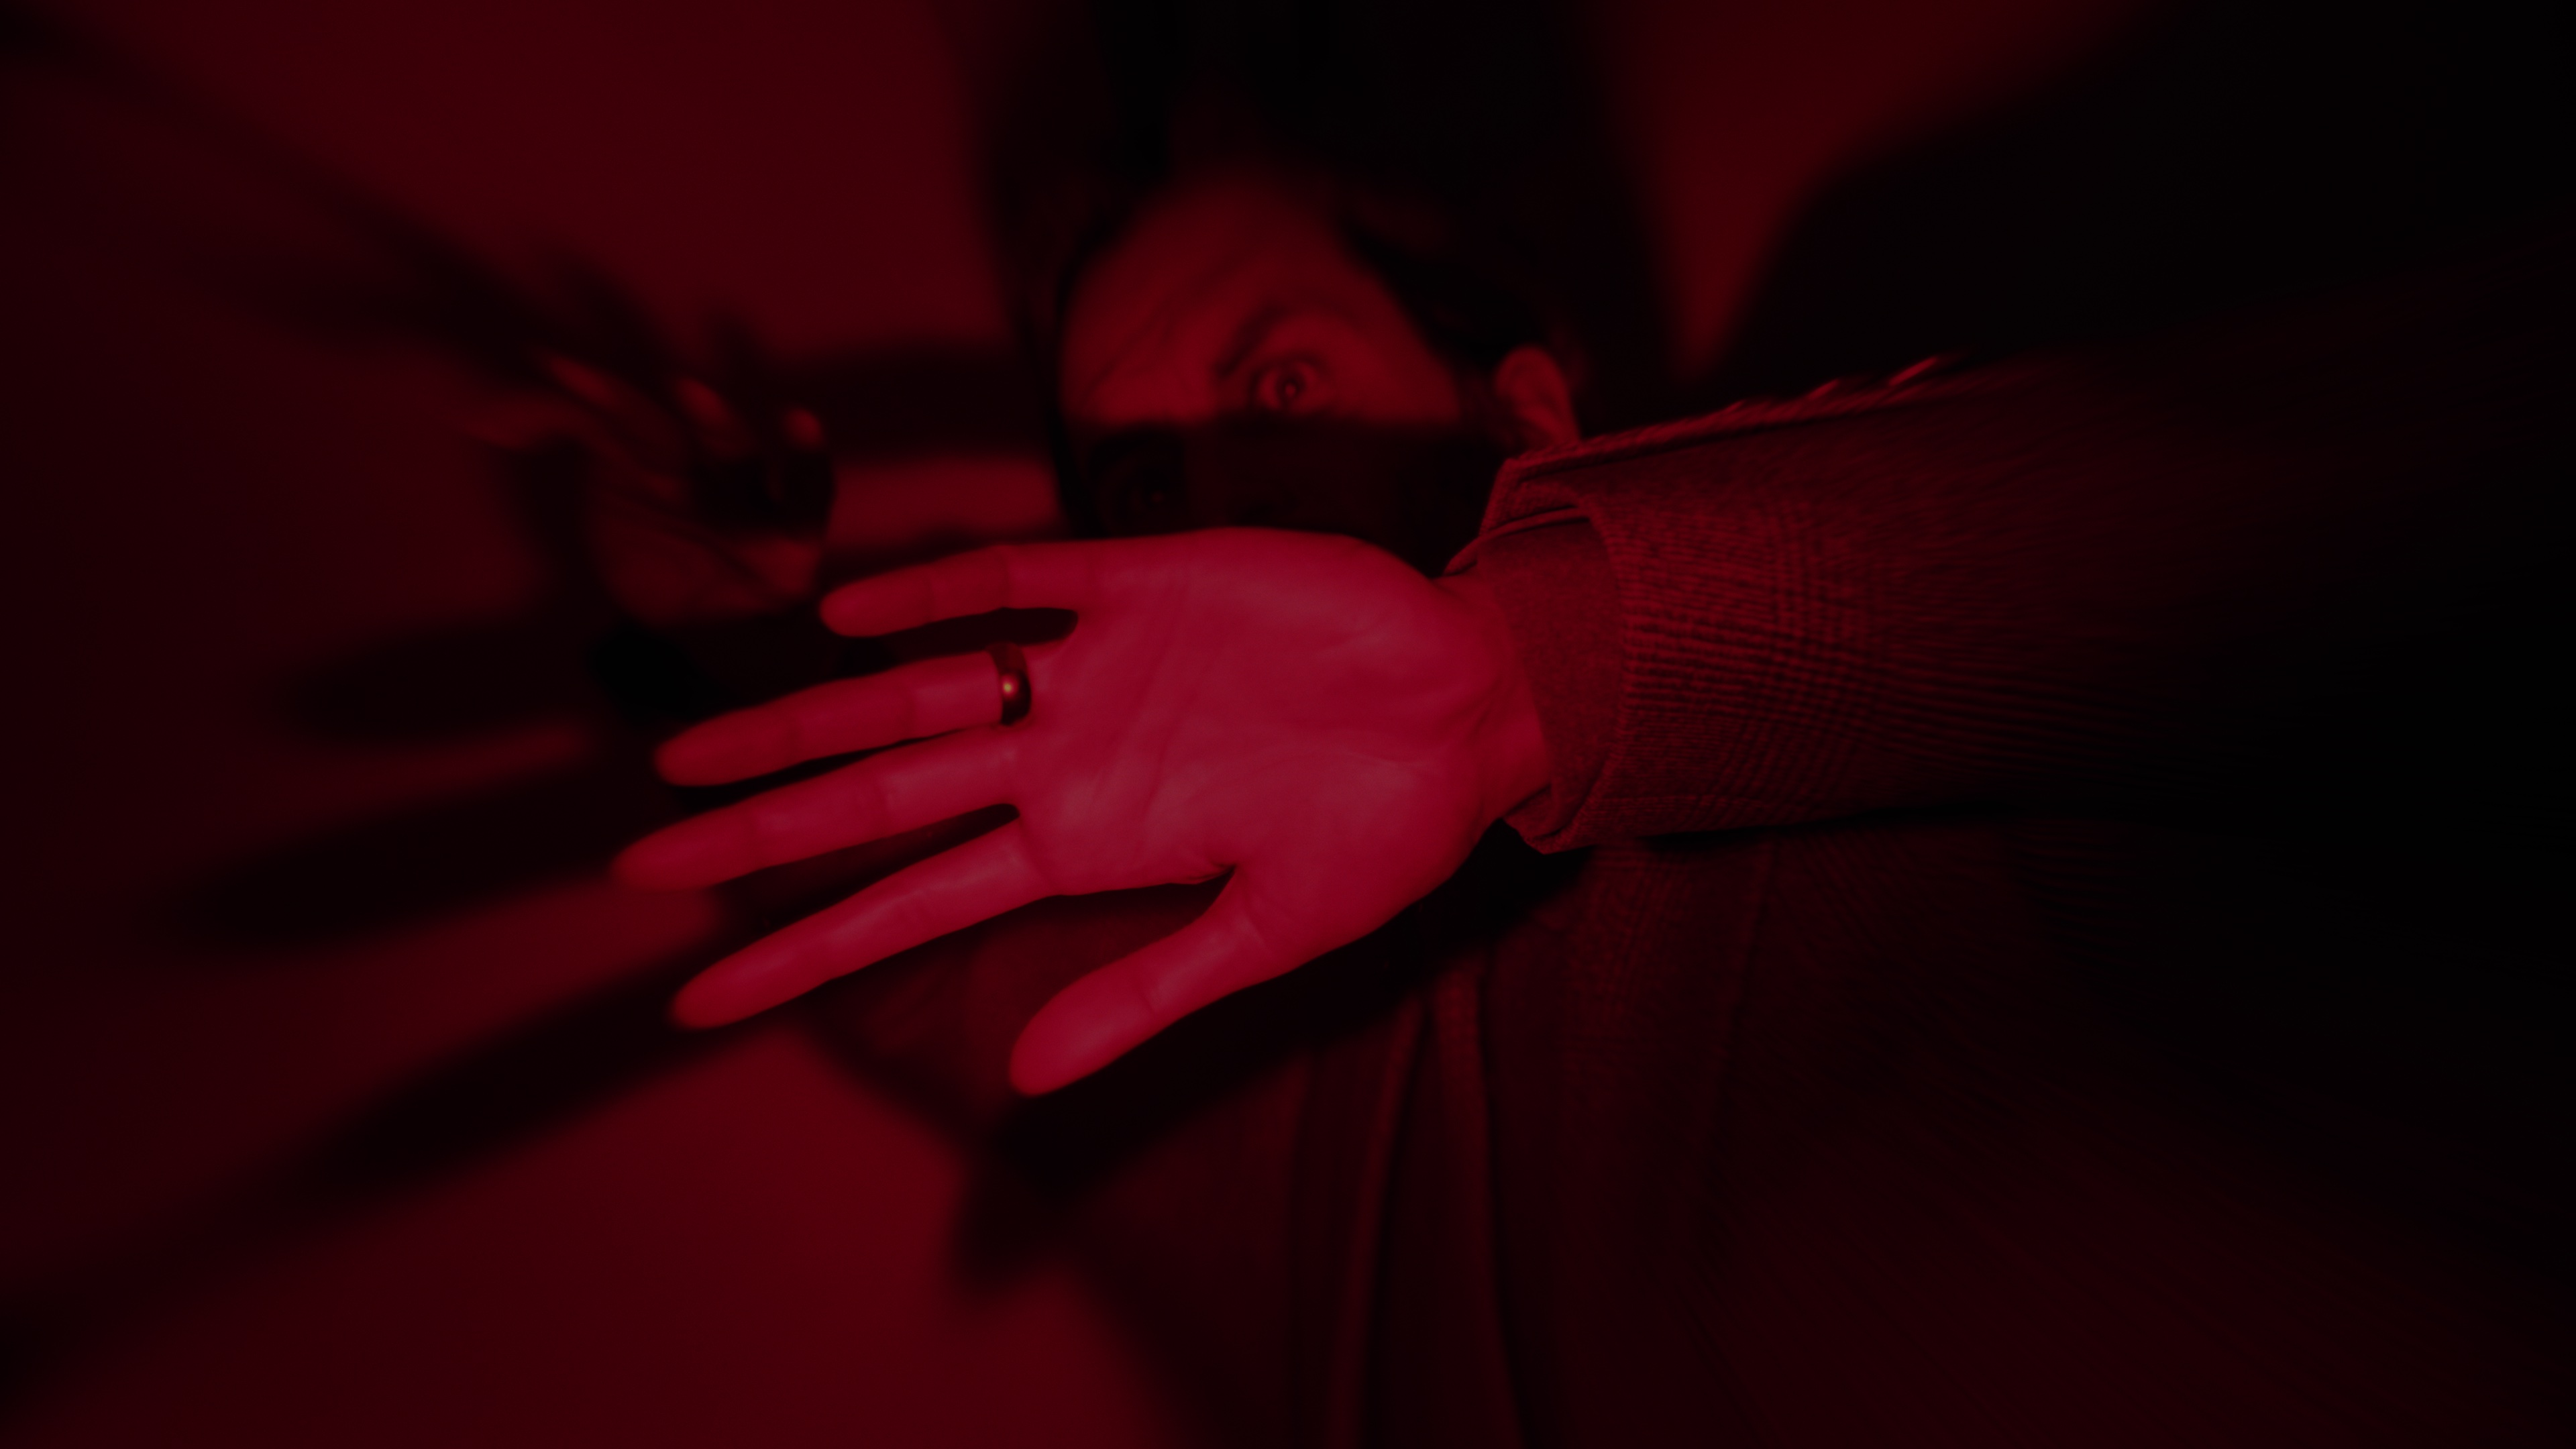 Screenshot ze hry Alan Wake 2 ukazující Alana uvězněného na temném místě pod červeným světlem